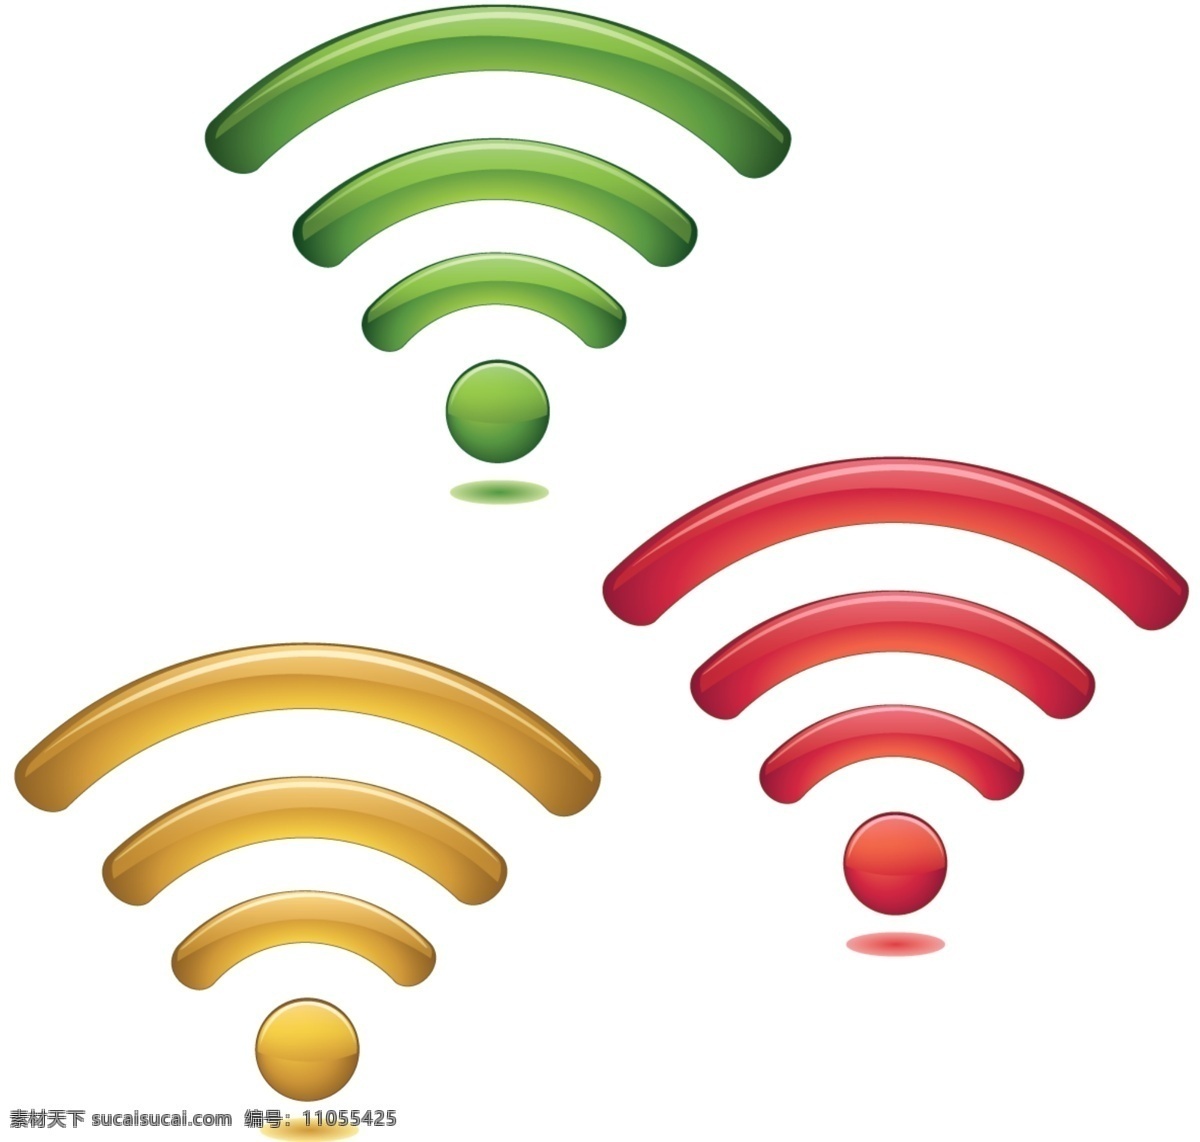 移动通讯 网络 信号 图标 矢量图 通讯图标 网络信号 网络标识 信号标志 其他矢量图